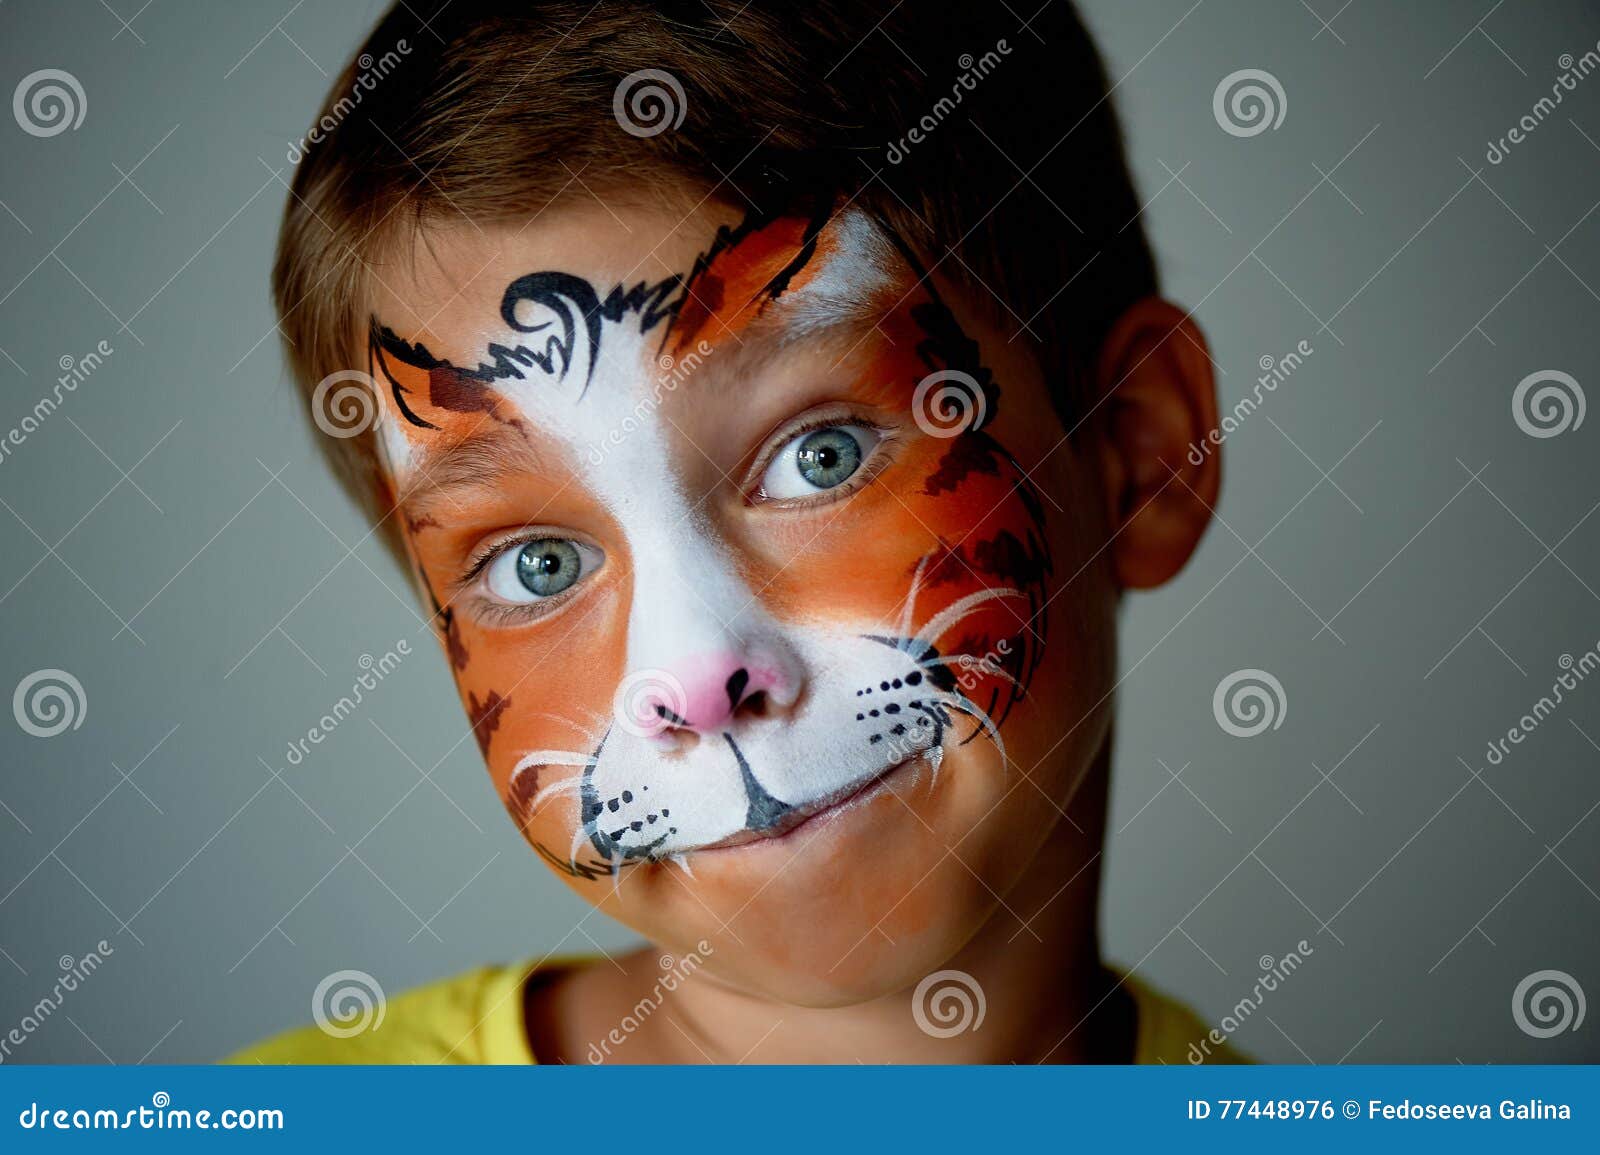 cat face paint boy